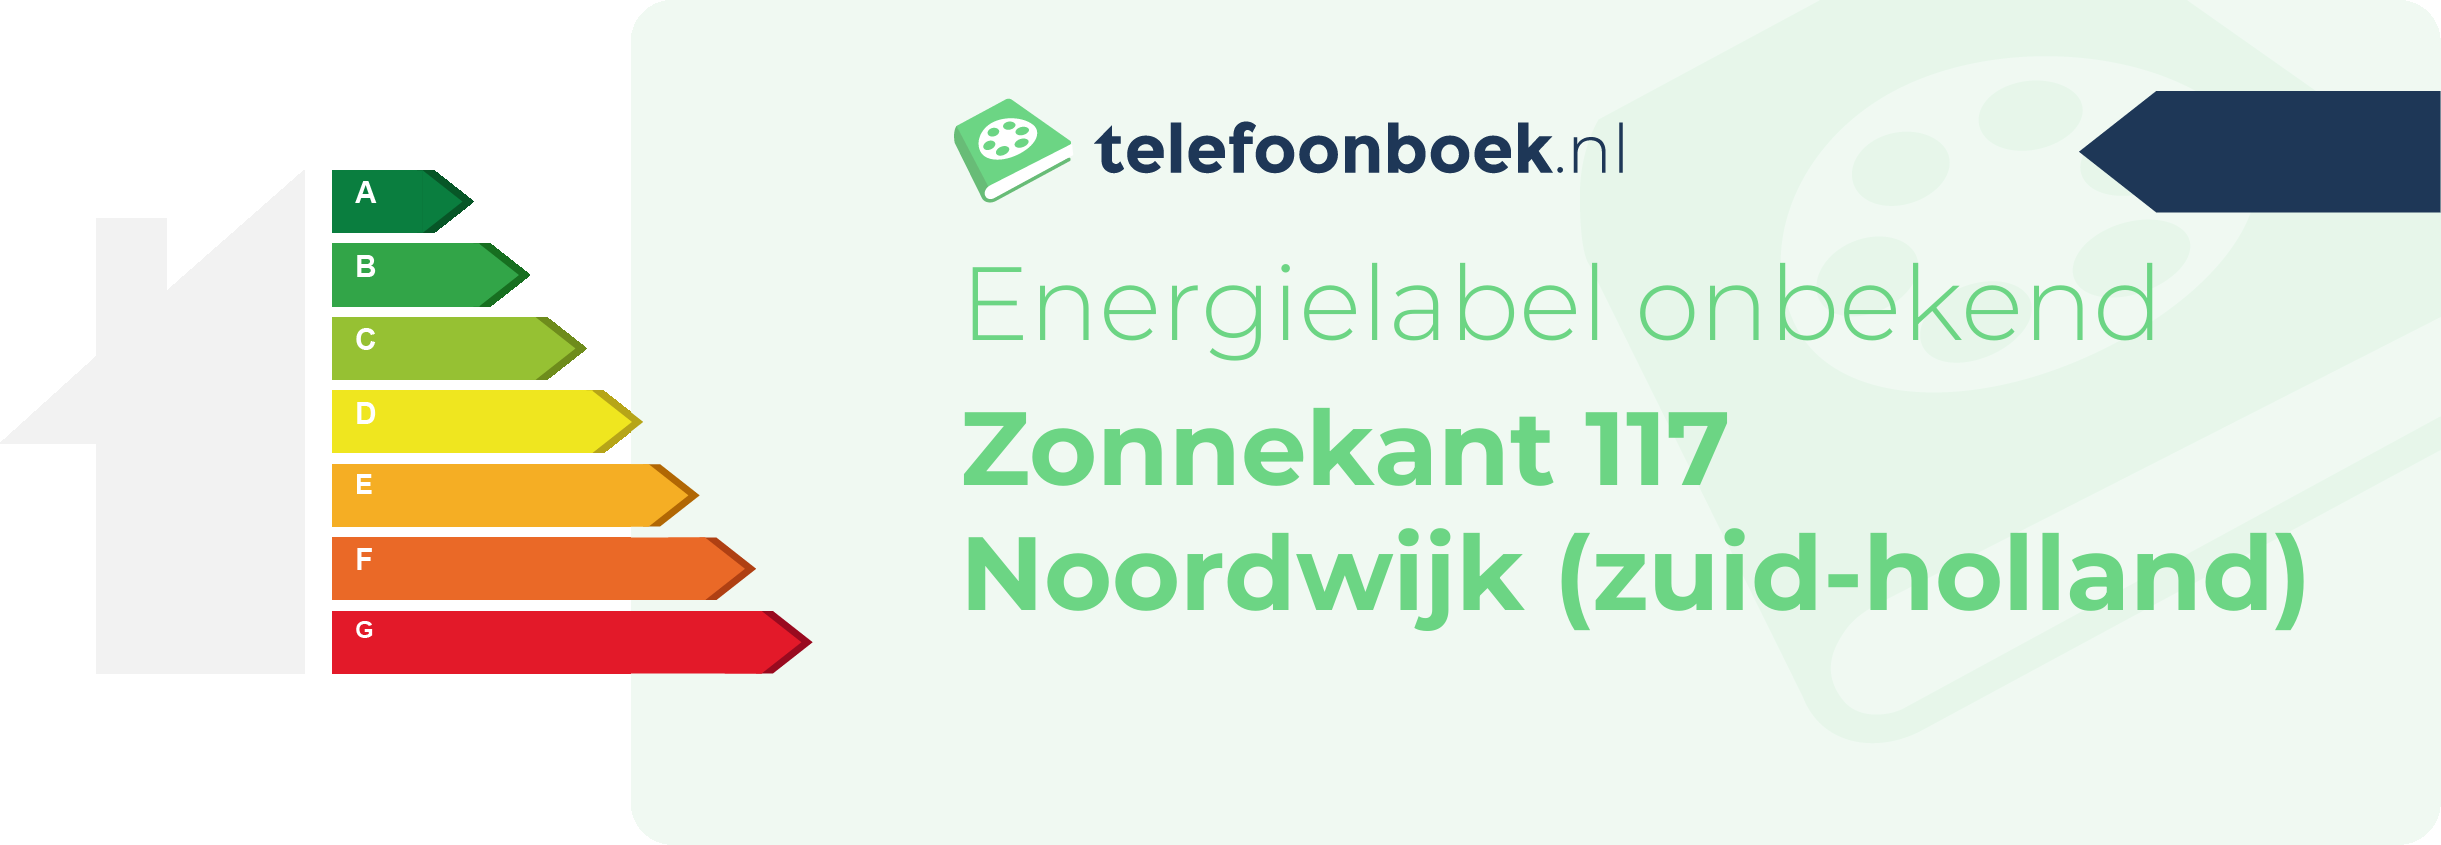 Energielabel Zonnekant 117 Noordwijk (Zuid-Holland)